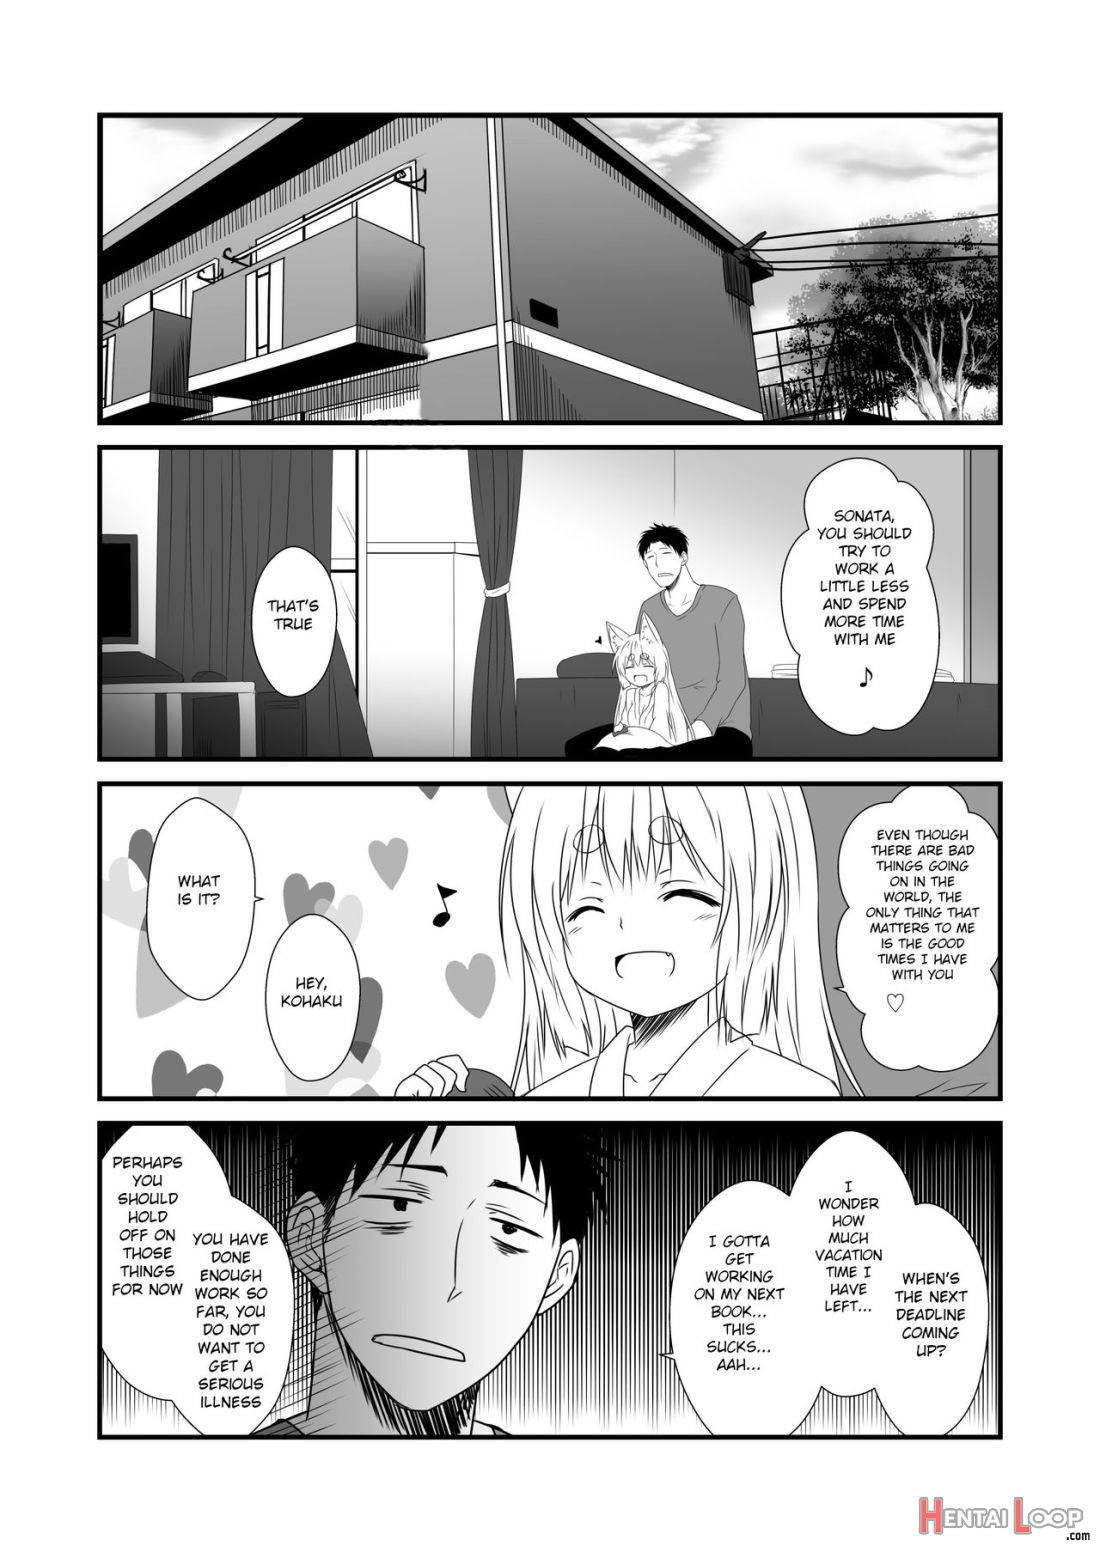 Kohaku Biyori Vol. 6 page 4